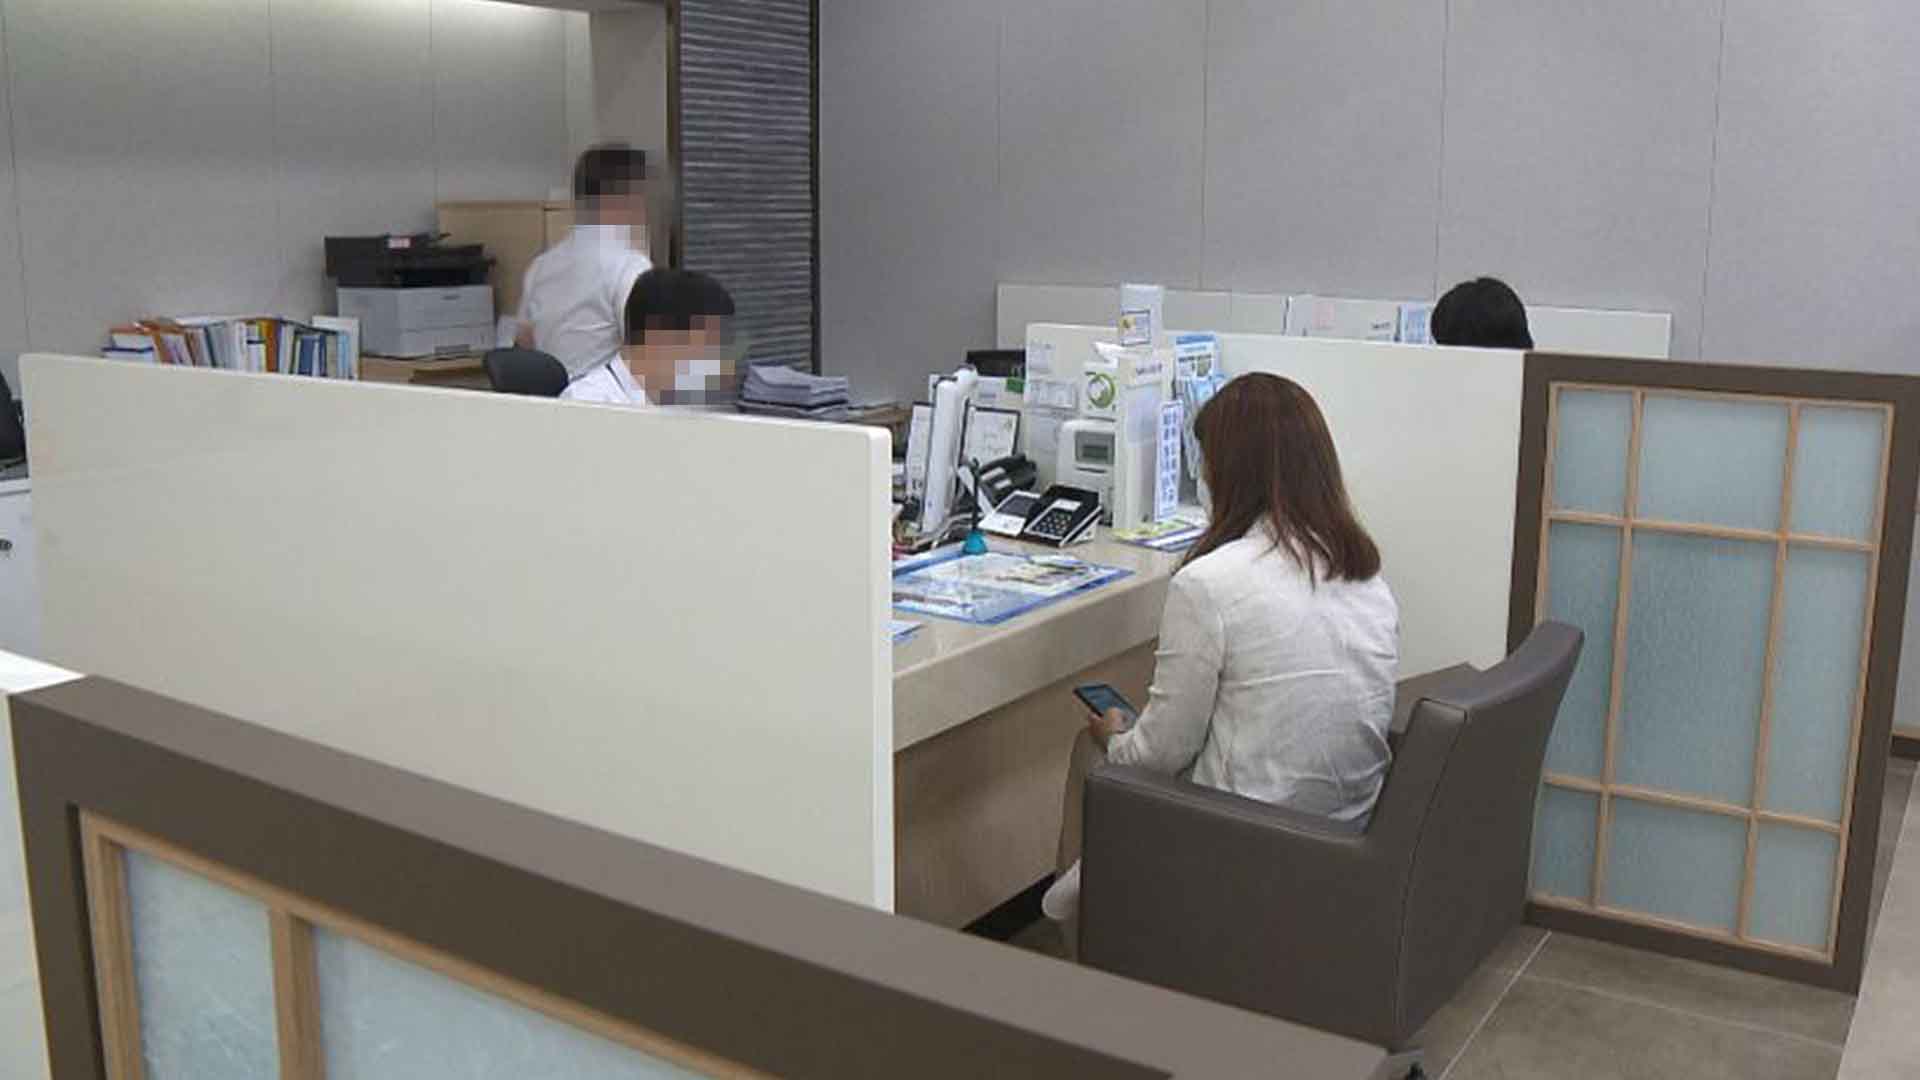 2월 전북권 금융기관 대출 감소 폭 확대.. 예금은 증가로 전환